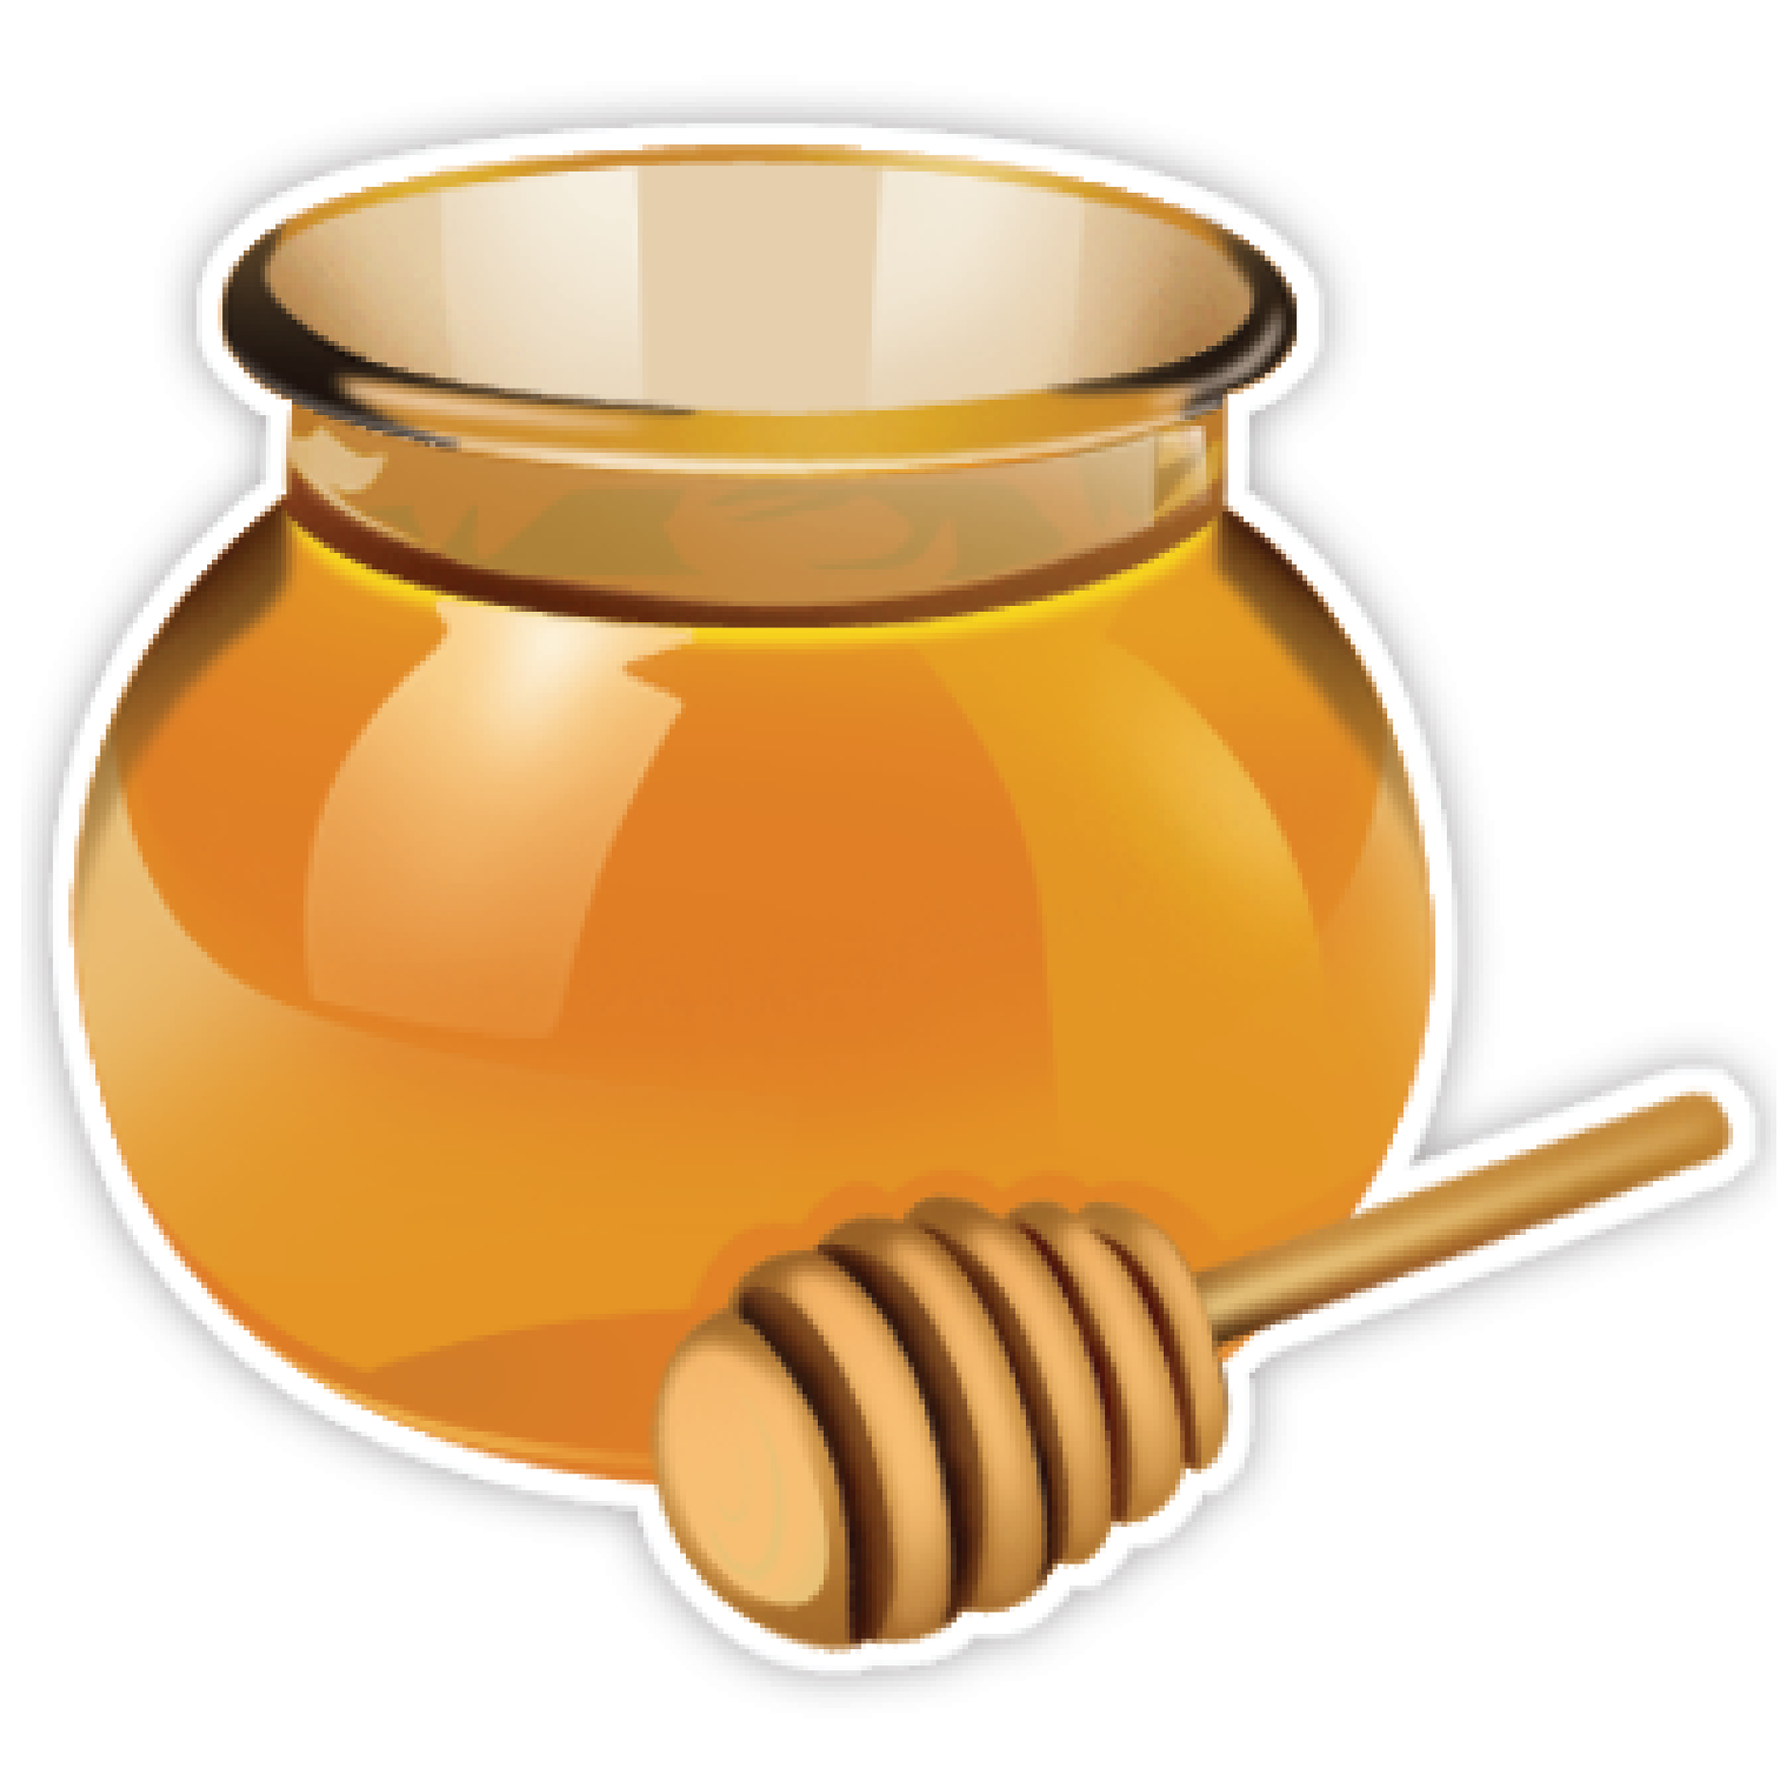 honey pot png